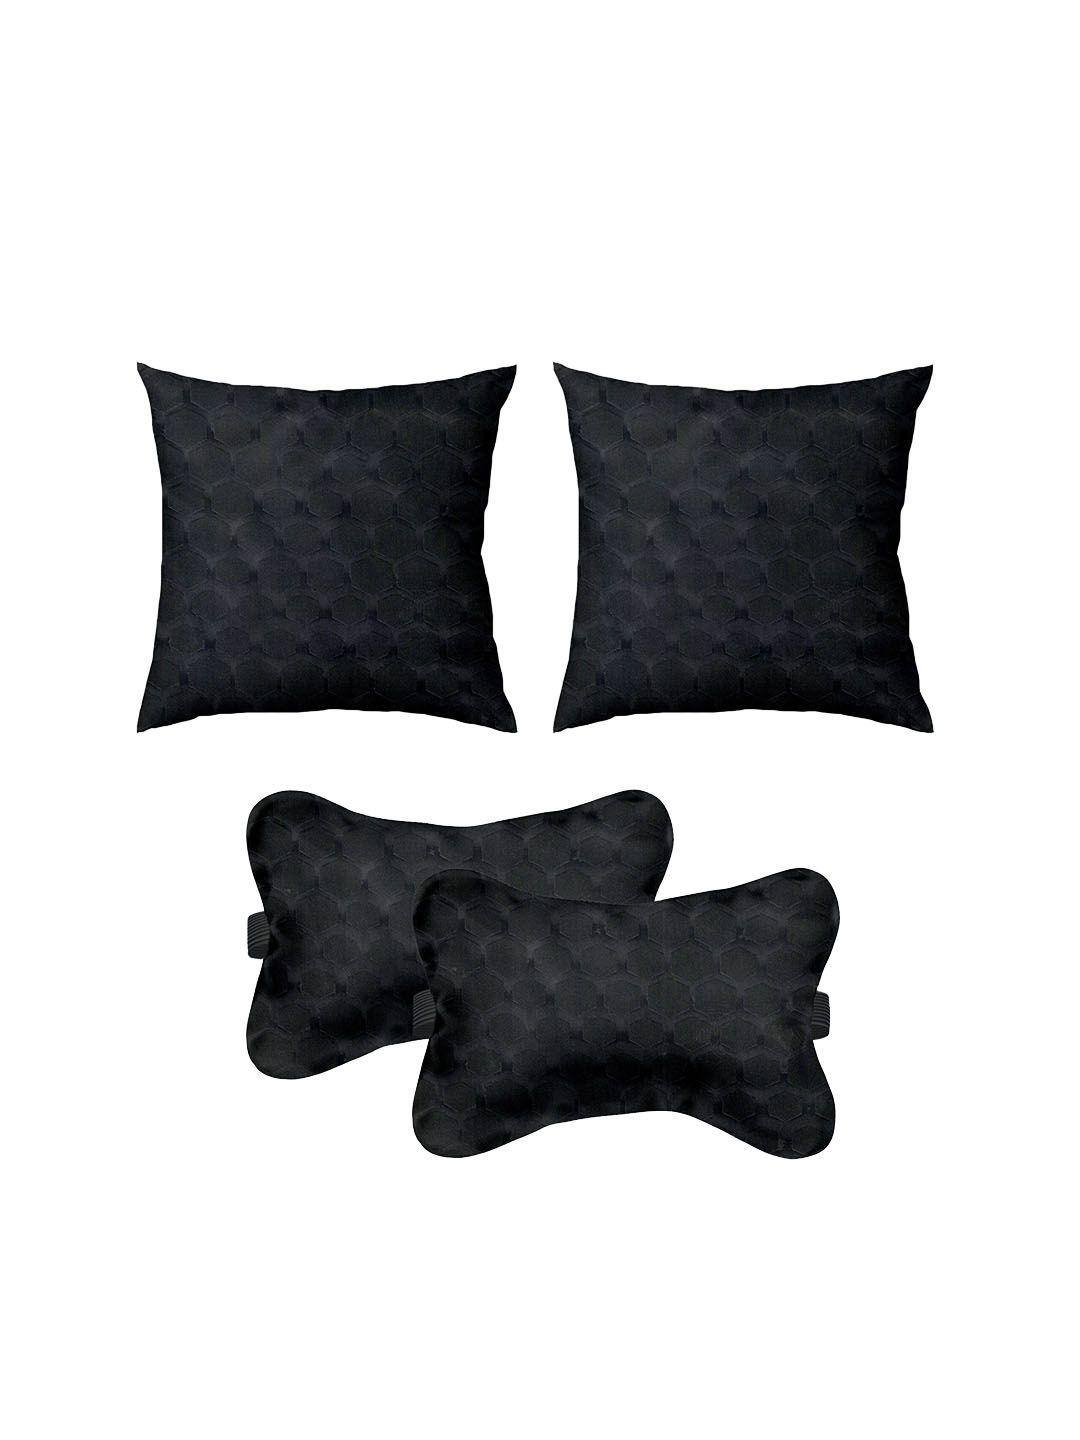 lushomes set of 4 car cushion pillows